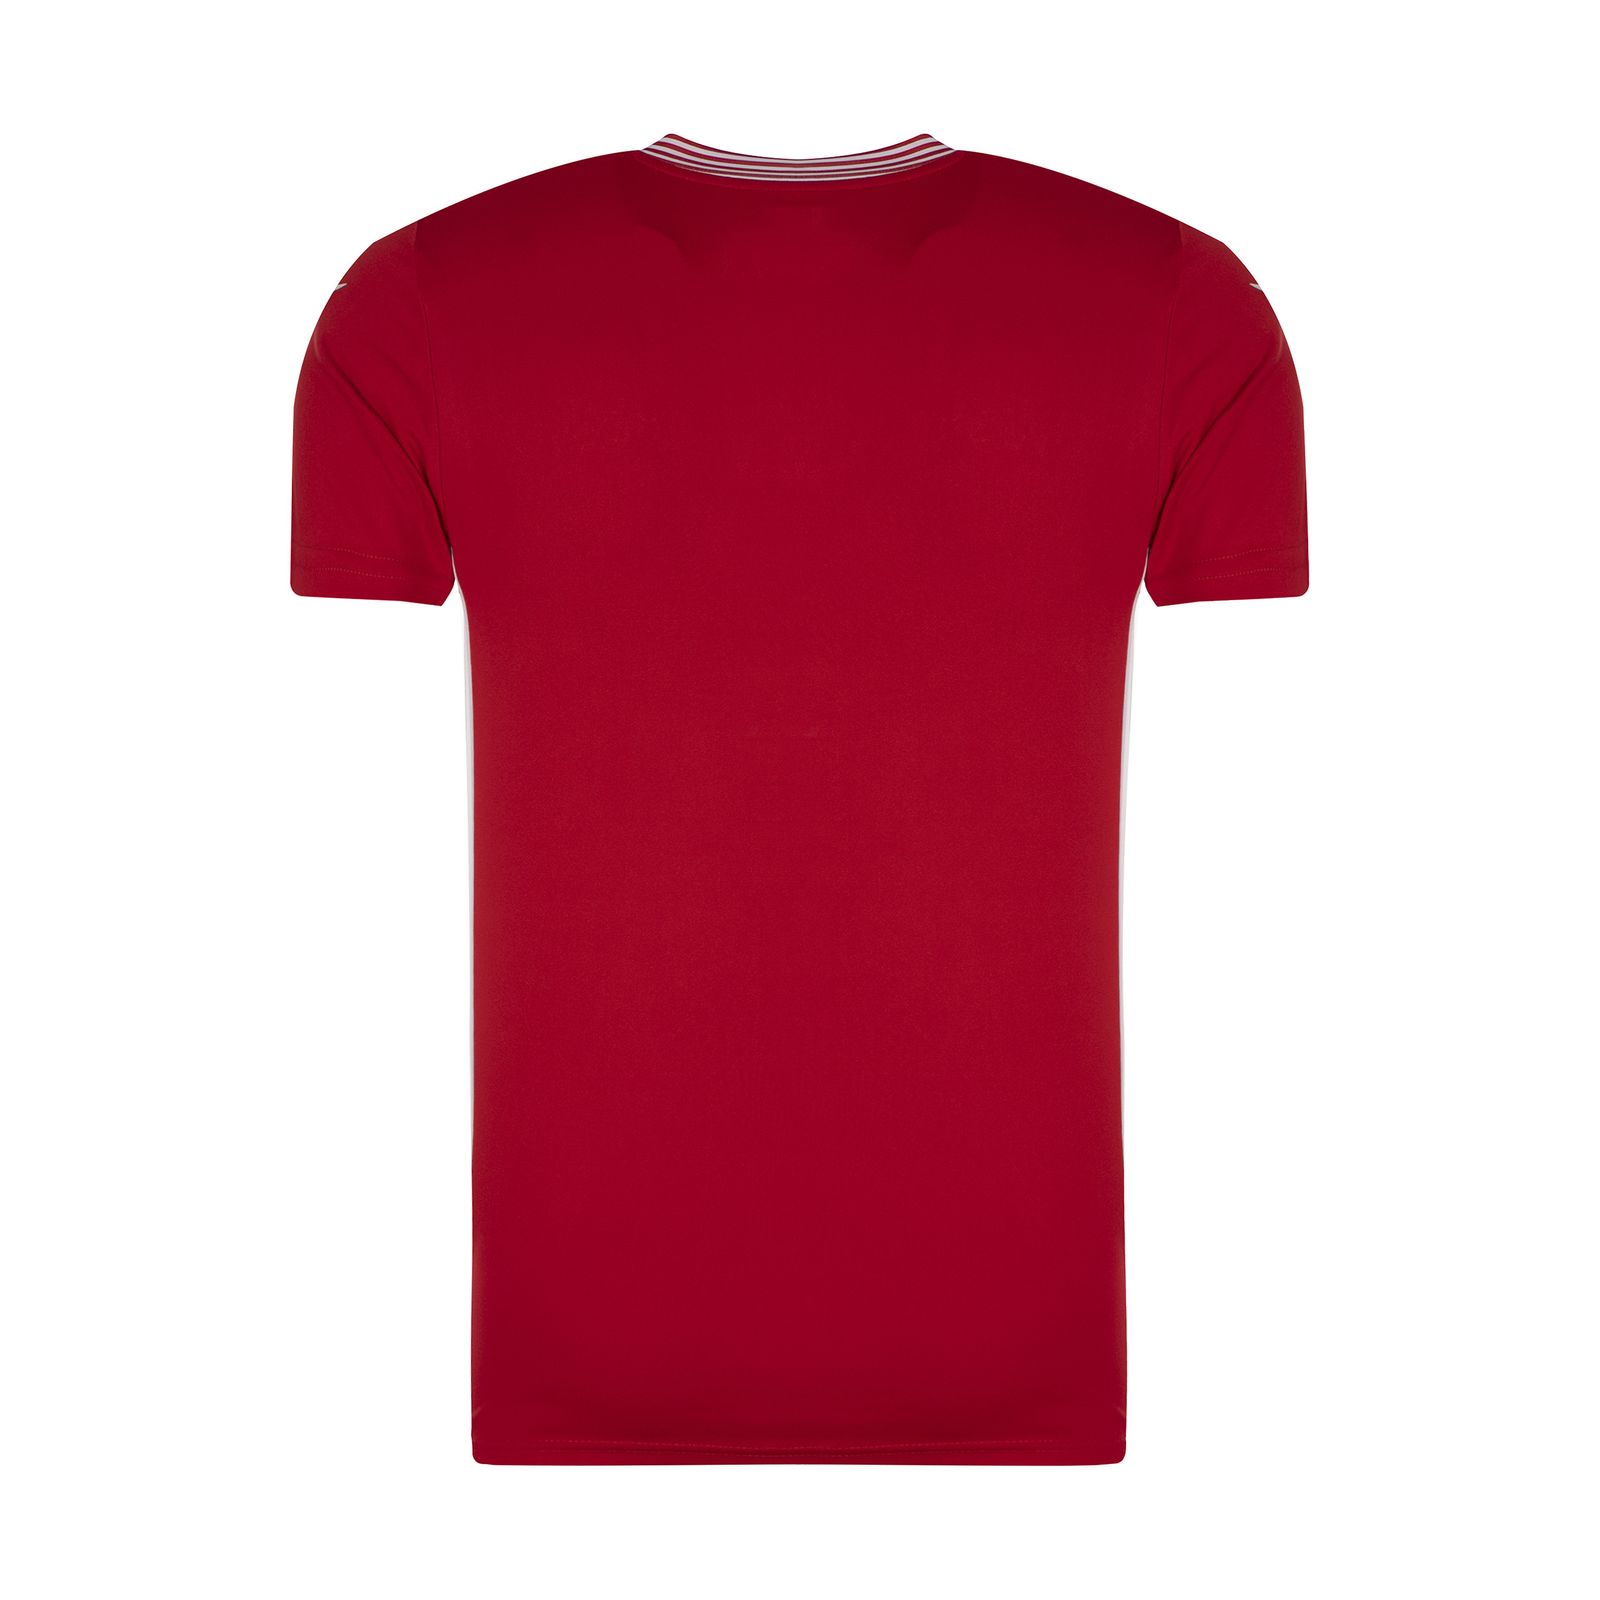 ست تی شرت و شلوارک ورزشی مردانه مکرون مدل کاناپوس رنگ قرمز -  - 5